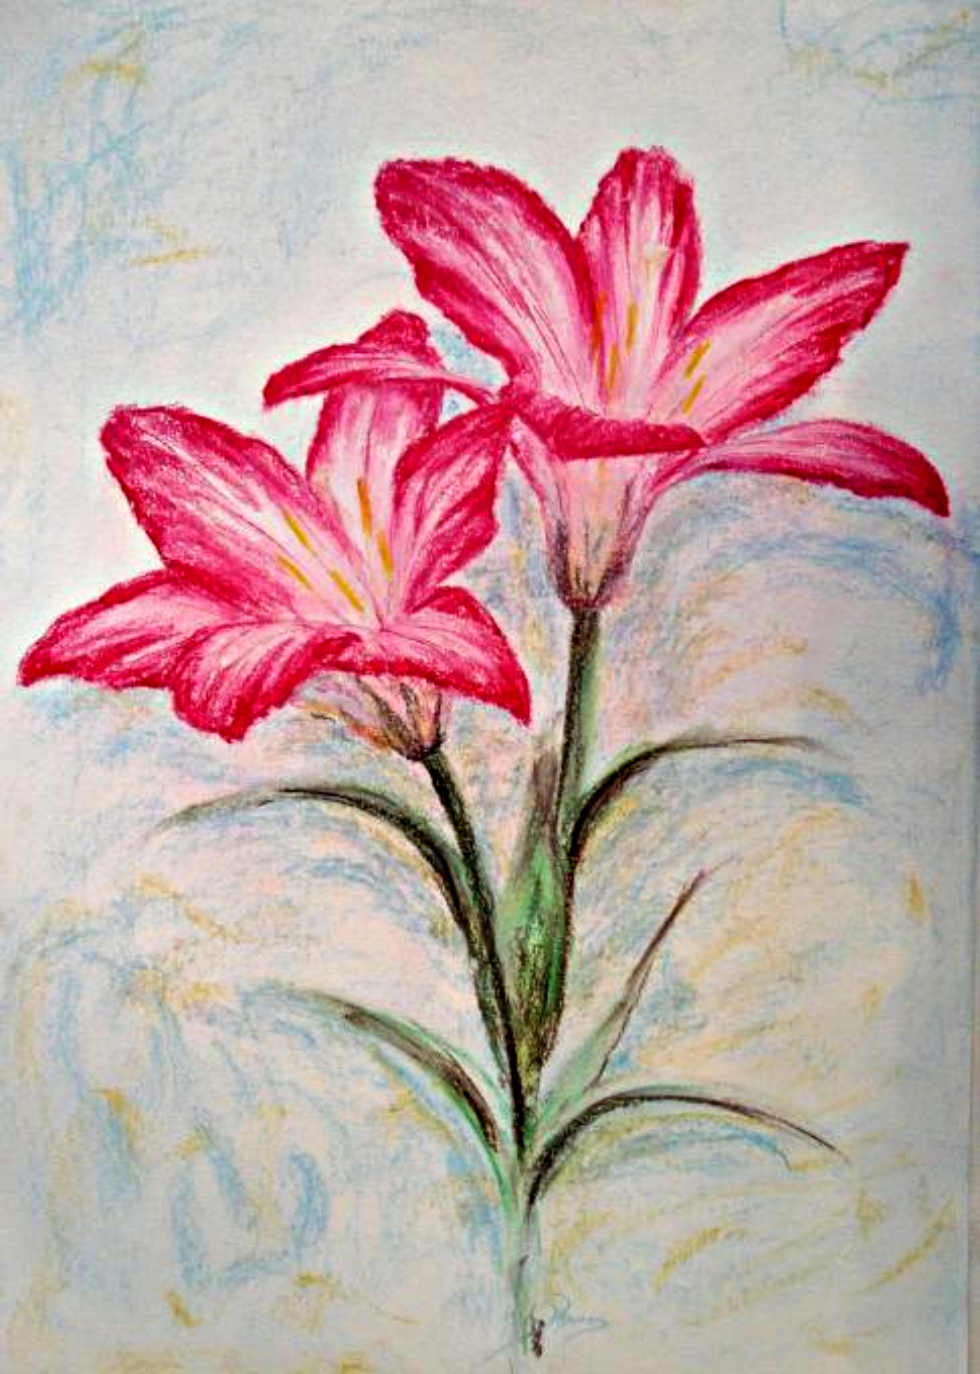 cách vẽ hoa Ly và Loa Kèn: Vẽ hoa ly và loa kèn là một cách để truyền tải niềm đam mê với nghệ thuật đến tất cả mọi người. Bạn sẽ được trải nghiệm cảm giác tuyệt vời khi tạo ra một bức tranh độc đáo nhất với sự kết hợp của hai bông hoa đặc trưng này. Sẽ rất thú vị đấy!